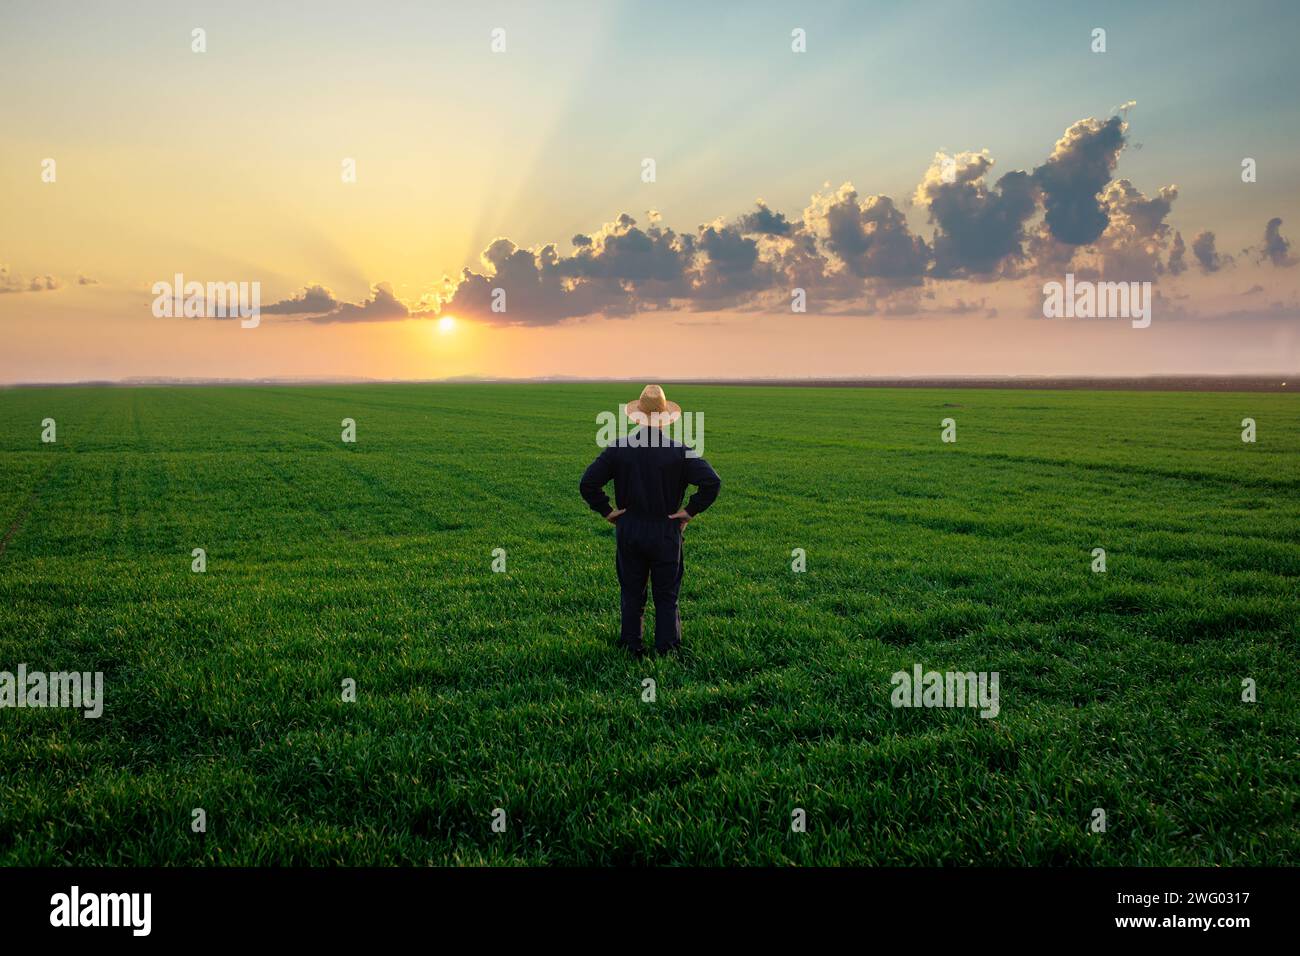 Rückansicht eines Seniorenbauers, der im grünen Weizenfeld steht und die Kultur bei Sonnenuntergang untersucht. Stockfoto